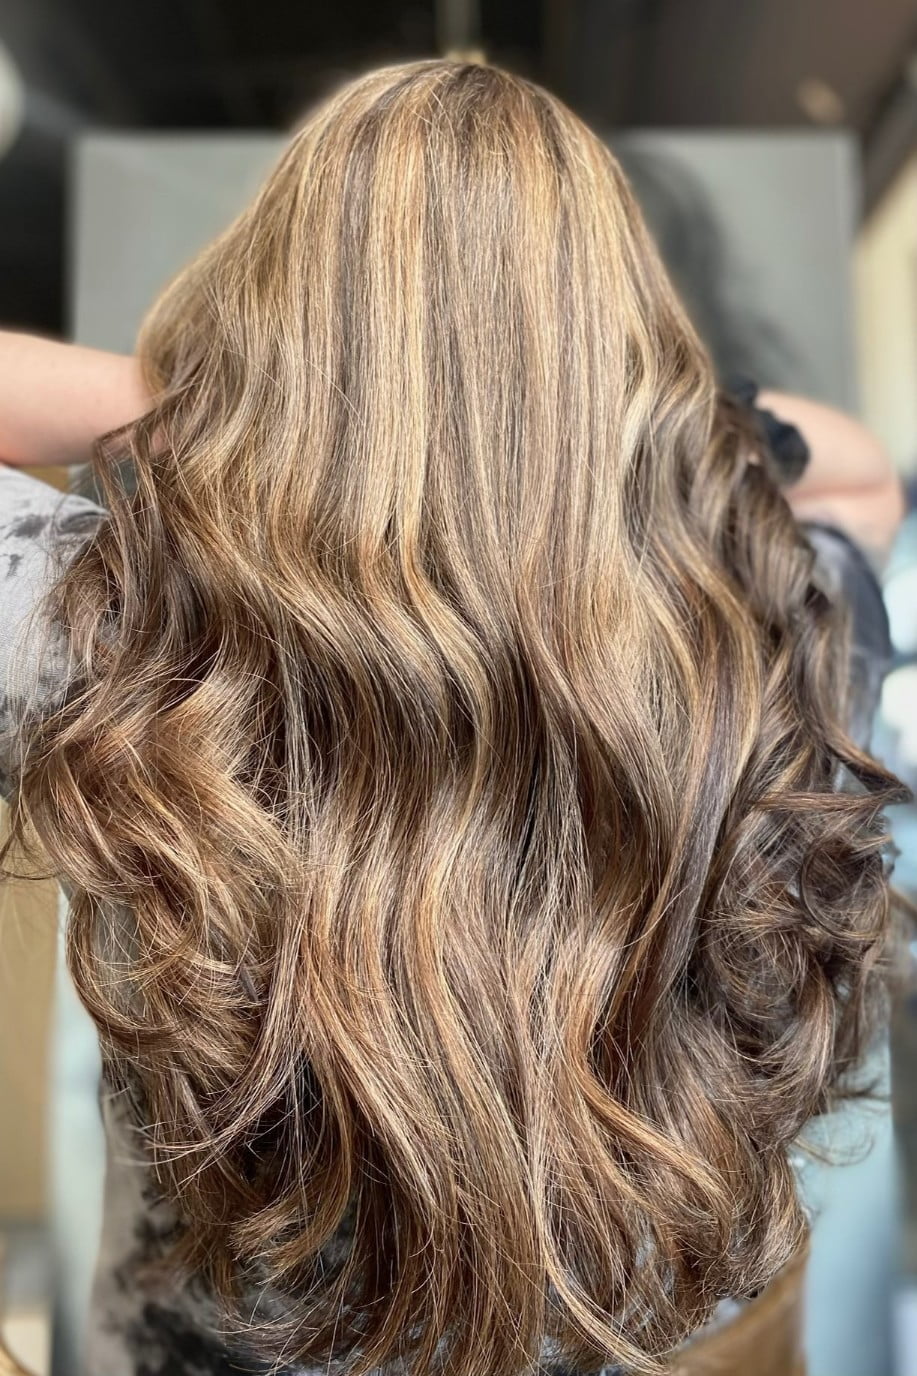 Ania Hair Salon_ long curls